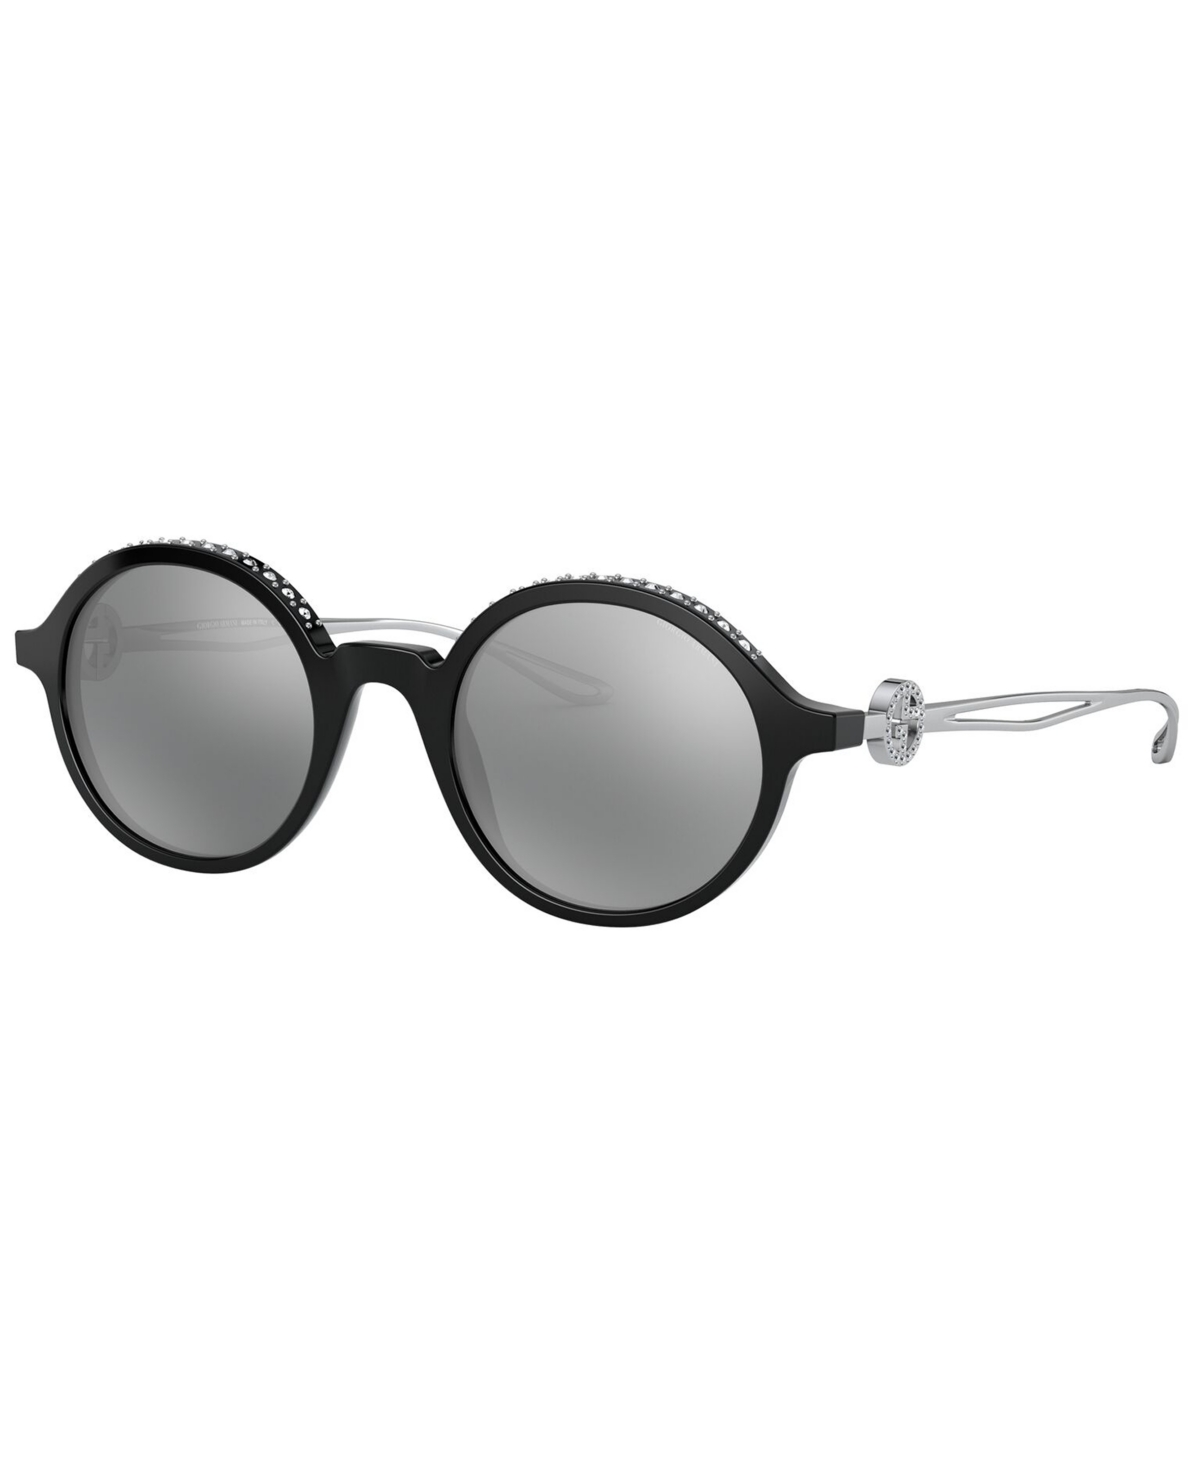 Giorgio Armani Women's Sunglasses In Black,grey Mirror Black